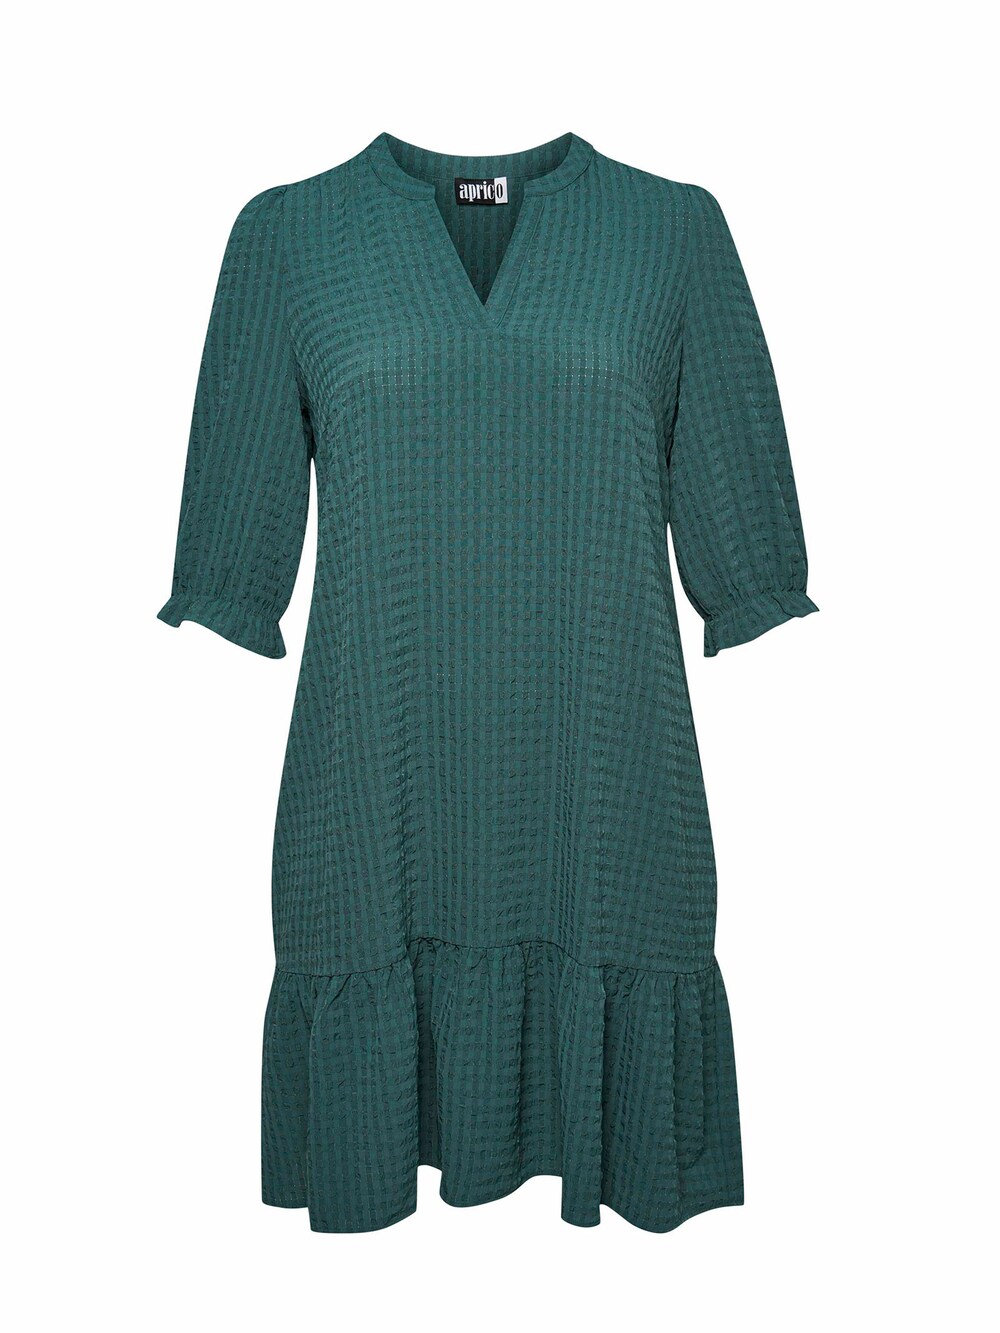 трава сворд куст 23 см зеленая 20 1433n treez Рубашка-платье Aprico, трава зеленая